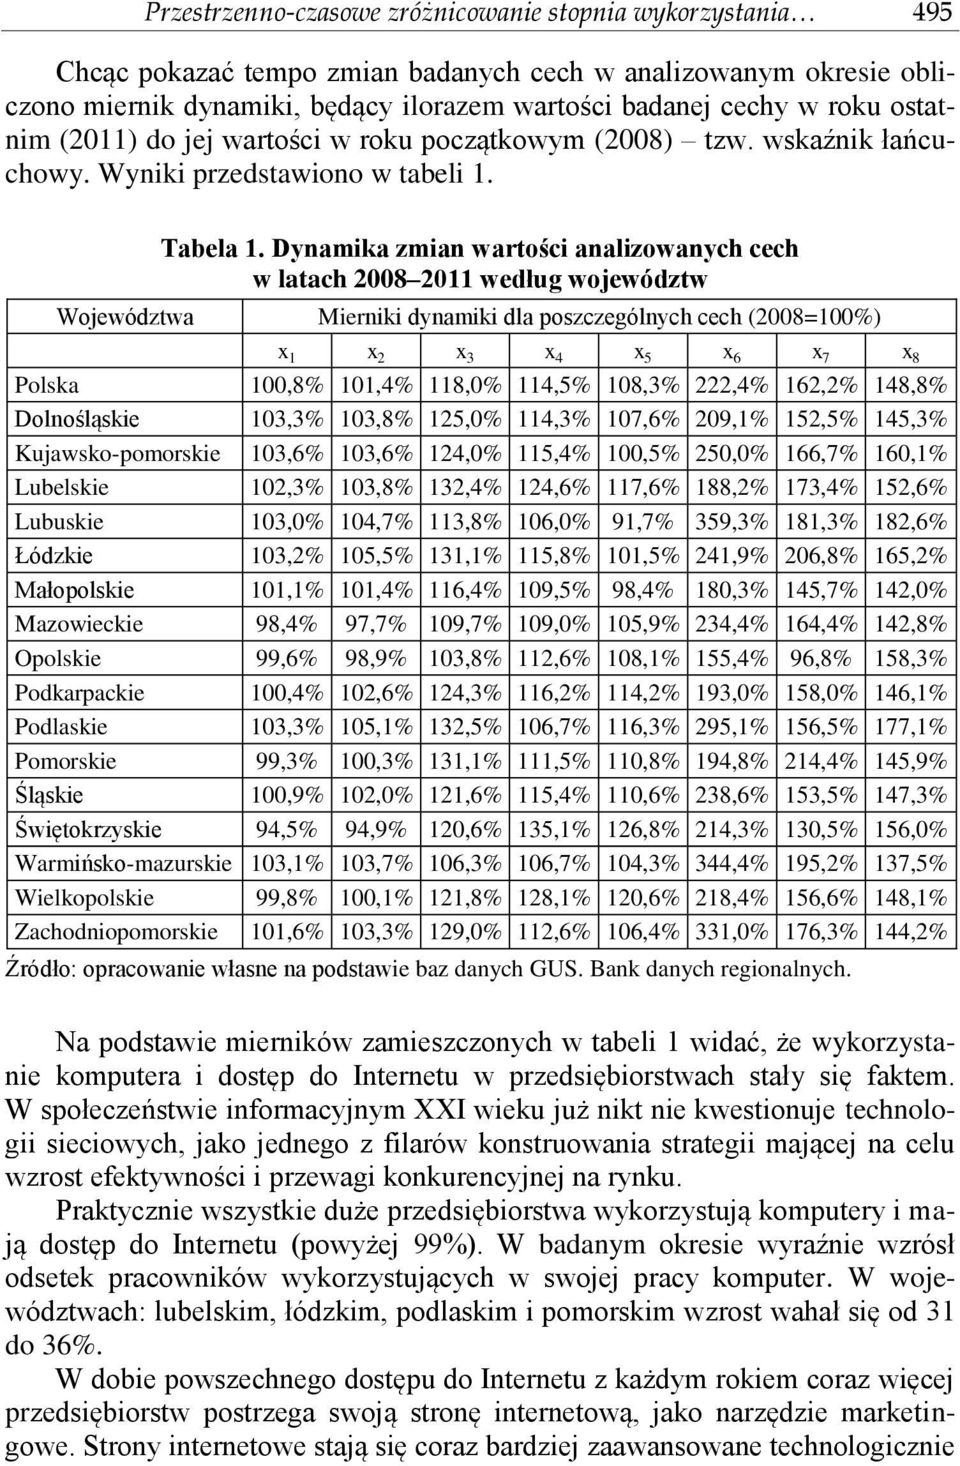 Dyamka zma wartośc aalzowaych cech w latach 2008 2011 według województw Województwa Merk dyamk dla poszczególych cech (2008=100%) x 1 x 2 x 3 x 4 x 5 x 6 x 7 x 8 Polska 100,8% 101,4% 118,0% 114,5%